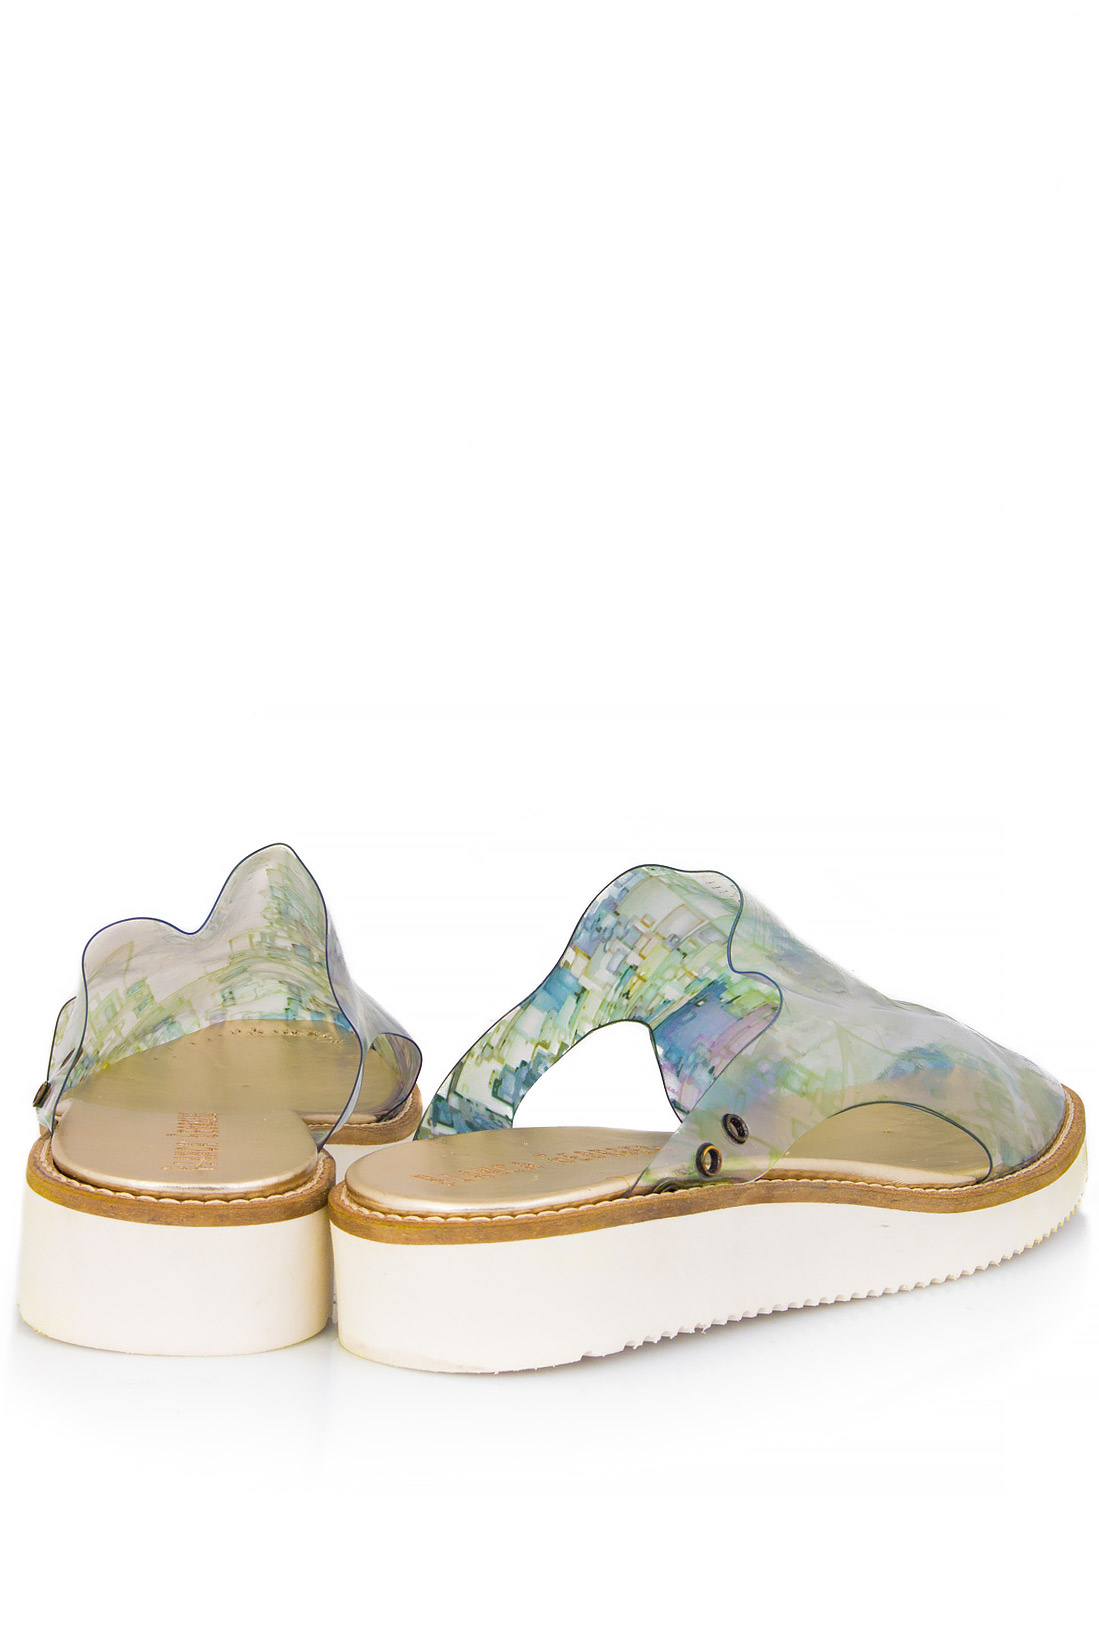 'Nurdle' printed PVC slippers Bianca Georgescu image 2